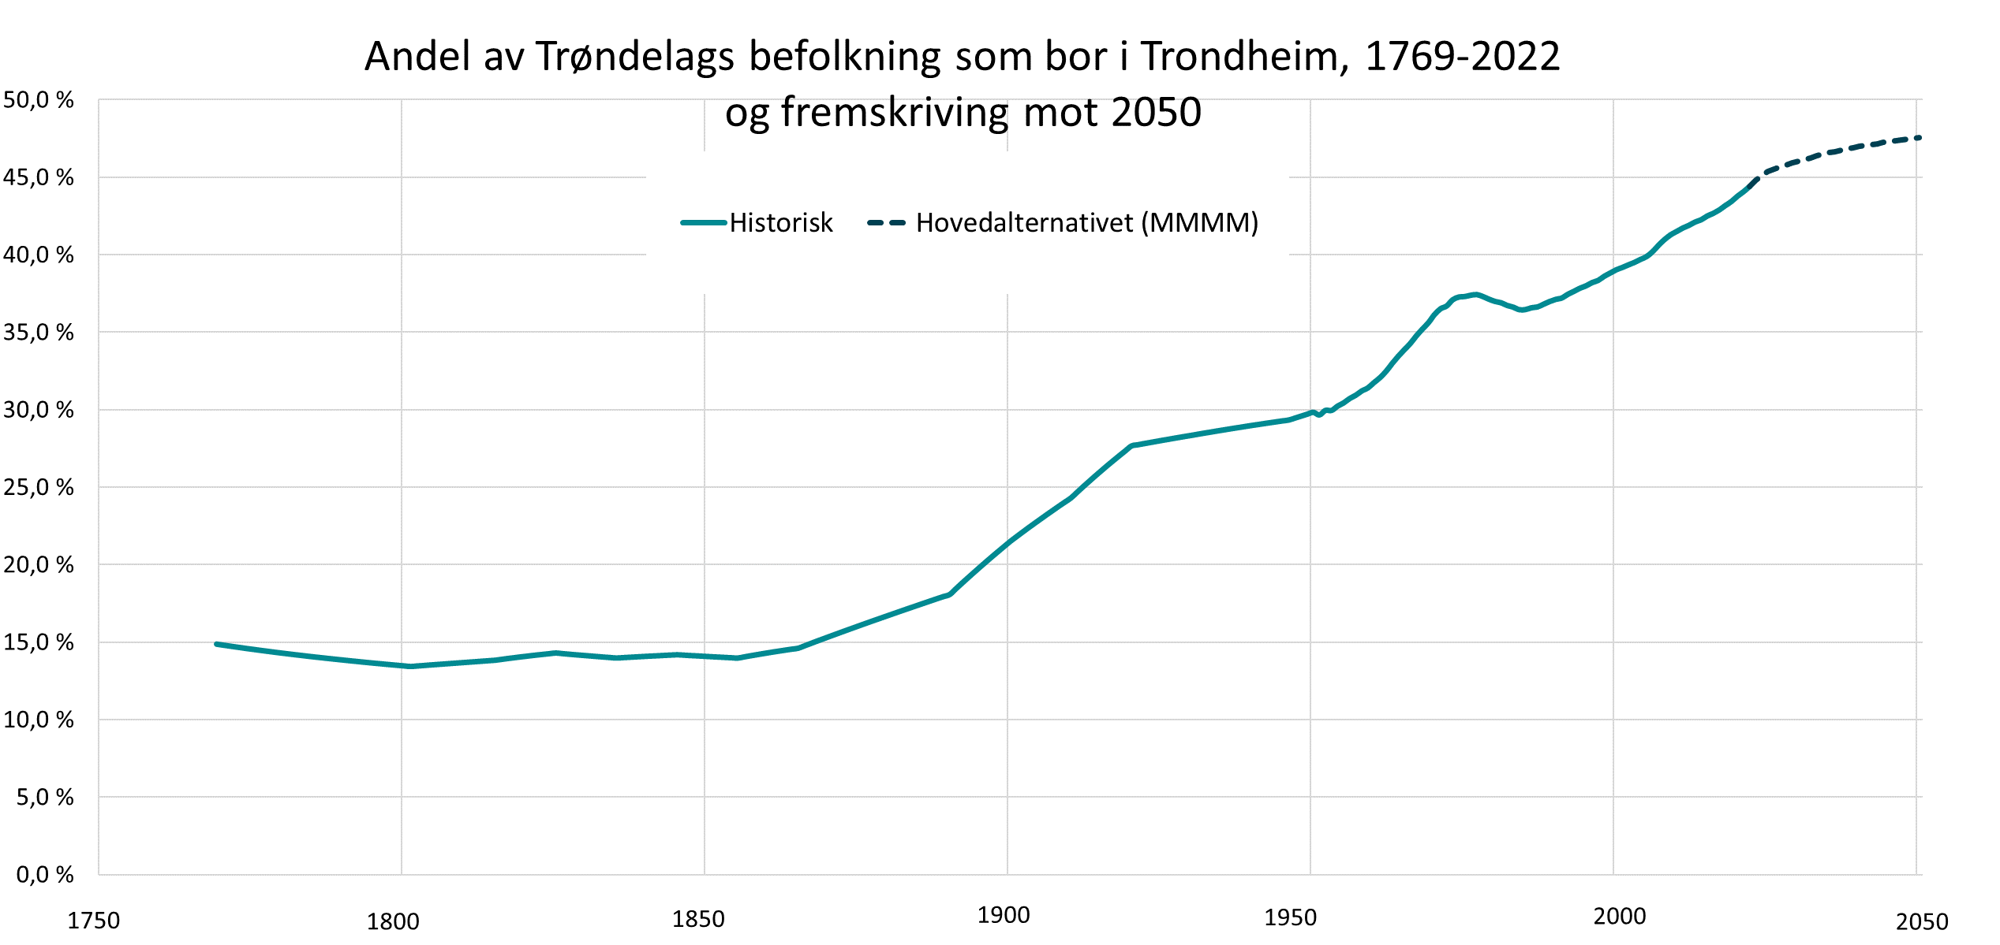 Andel av Trøndelags befolkning som bor i Trondheim, 1769-2022 og fremskriving mot 2050